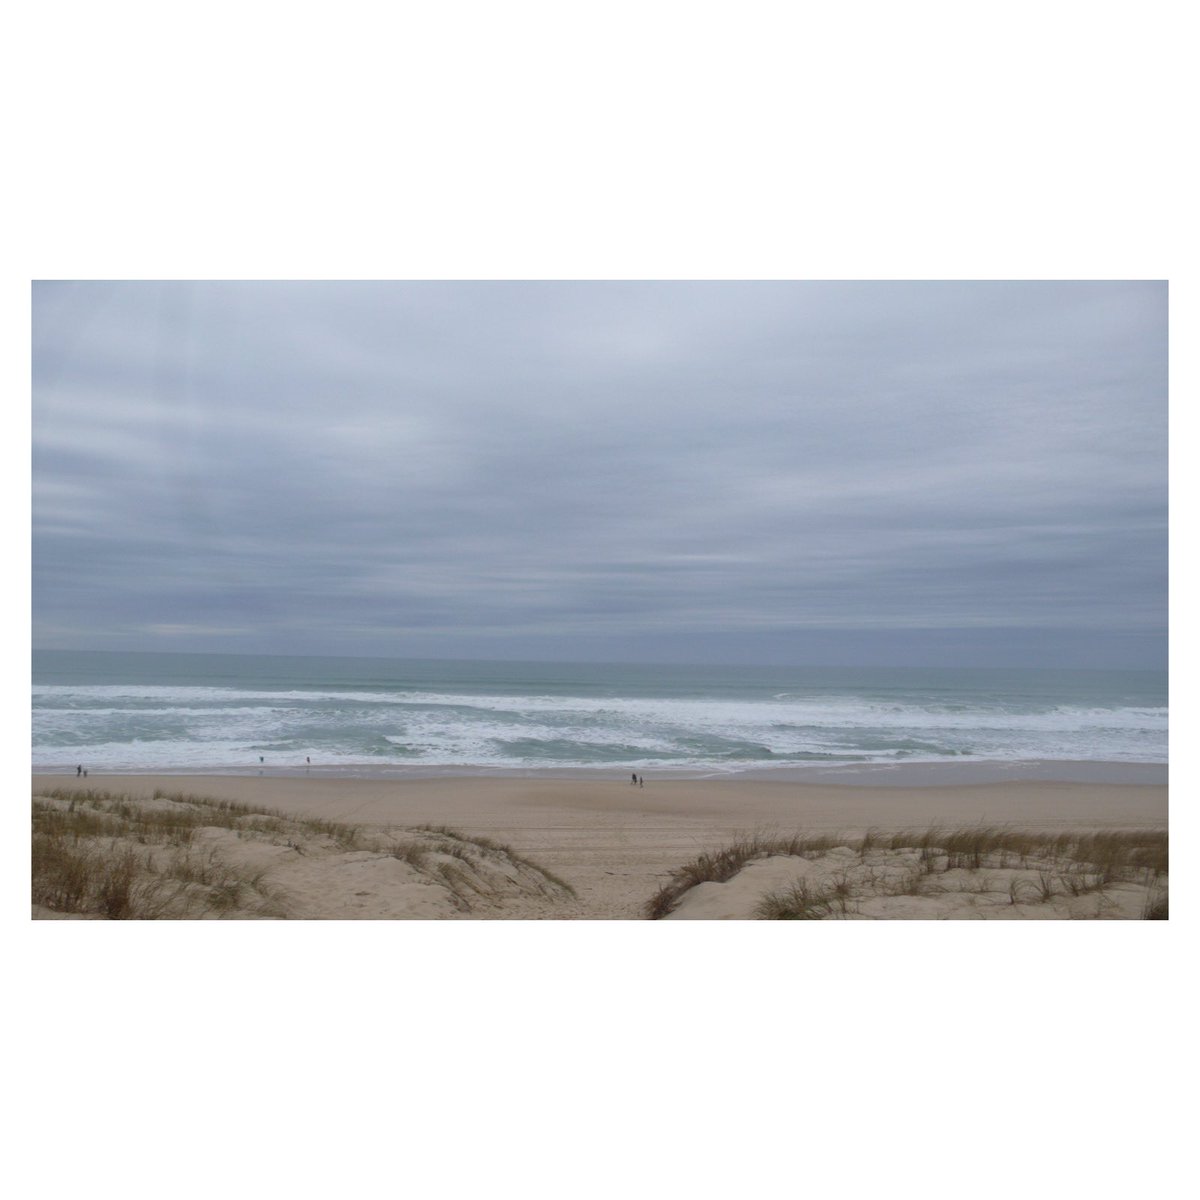 Plage du Truc Vert 
18.2.24

#ocean #legecapferret #plagedutrucvert #bassindarcachon #vivrelebassin #lecrakoi #igersfrance #igersnouvelleaquitaine #oceanphotography #oceanlife #wipplay #reponsesphoto #woofermagazine #leicacamerafrance #leicaphotography #leicadlux3 #sudouest